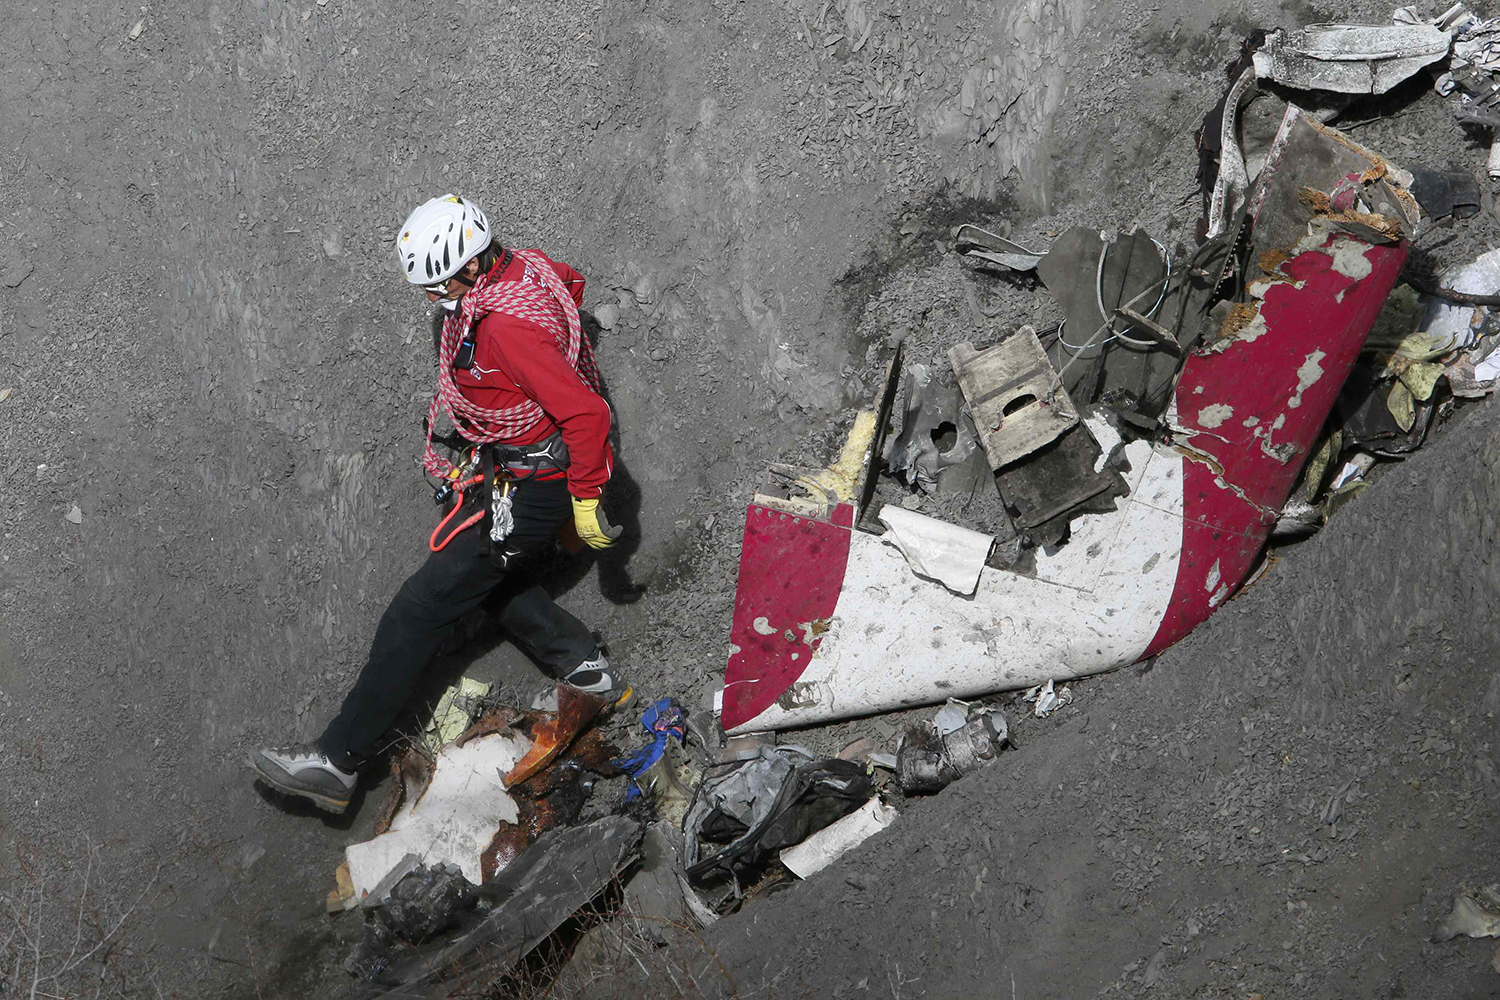 Termina recuperación de los restos de las víctimas del avión de Germanwings